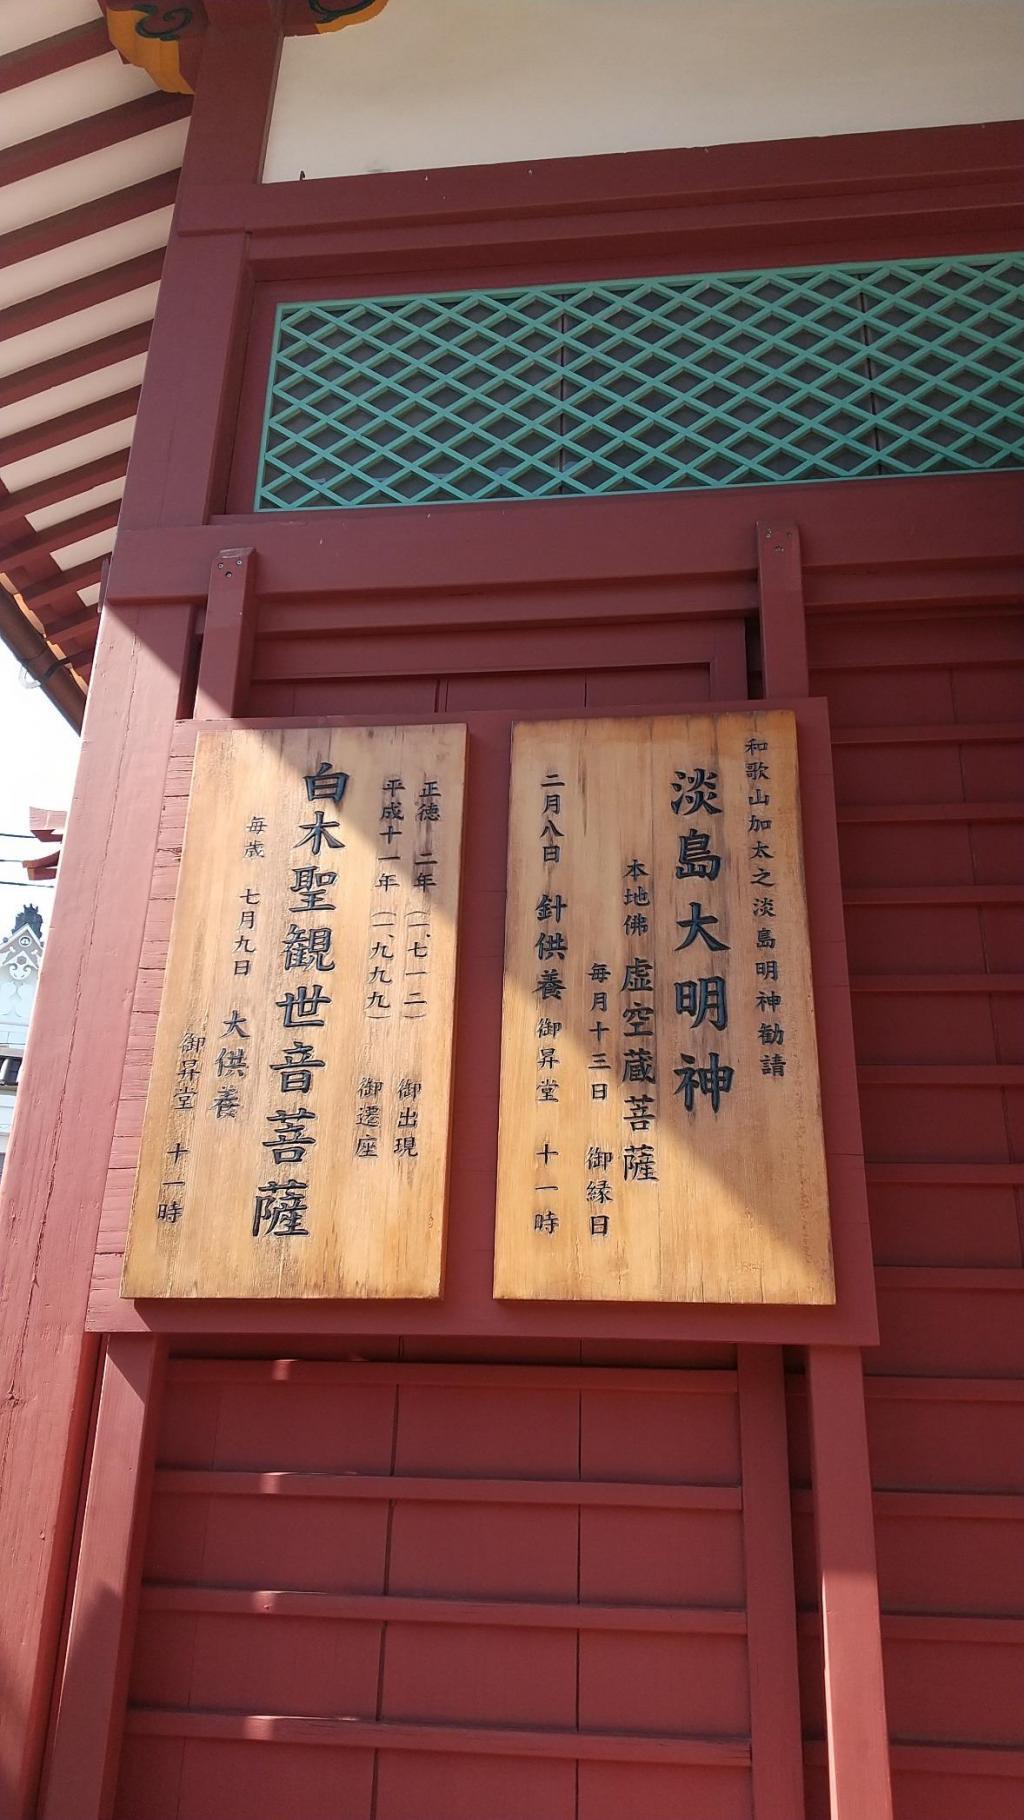 浅草寺淡嶋堂の壁には 白木屋の観音菩薩